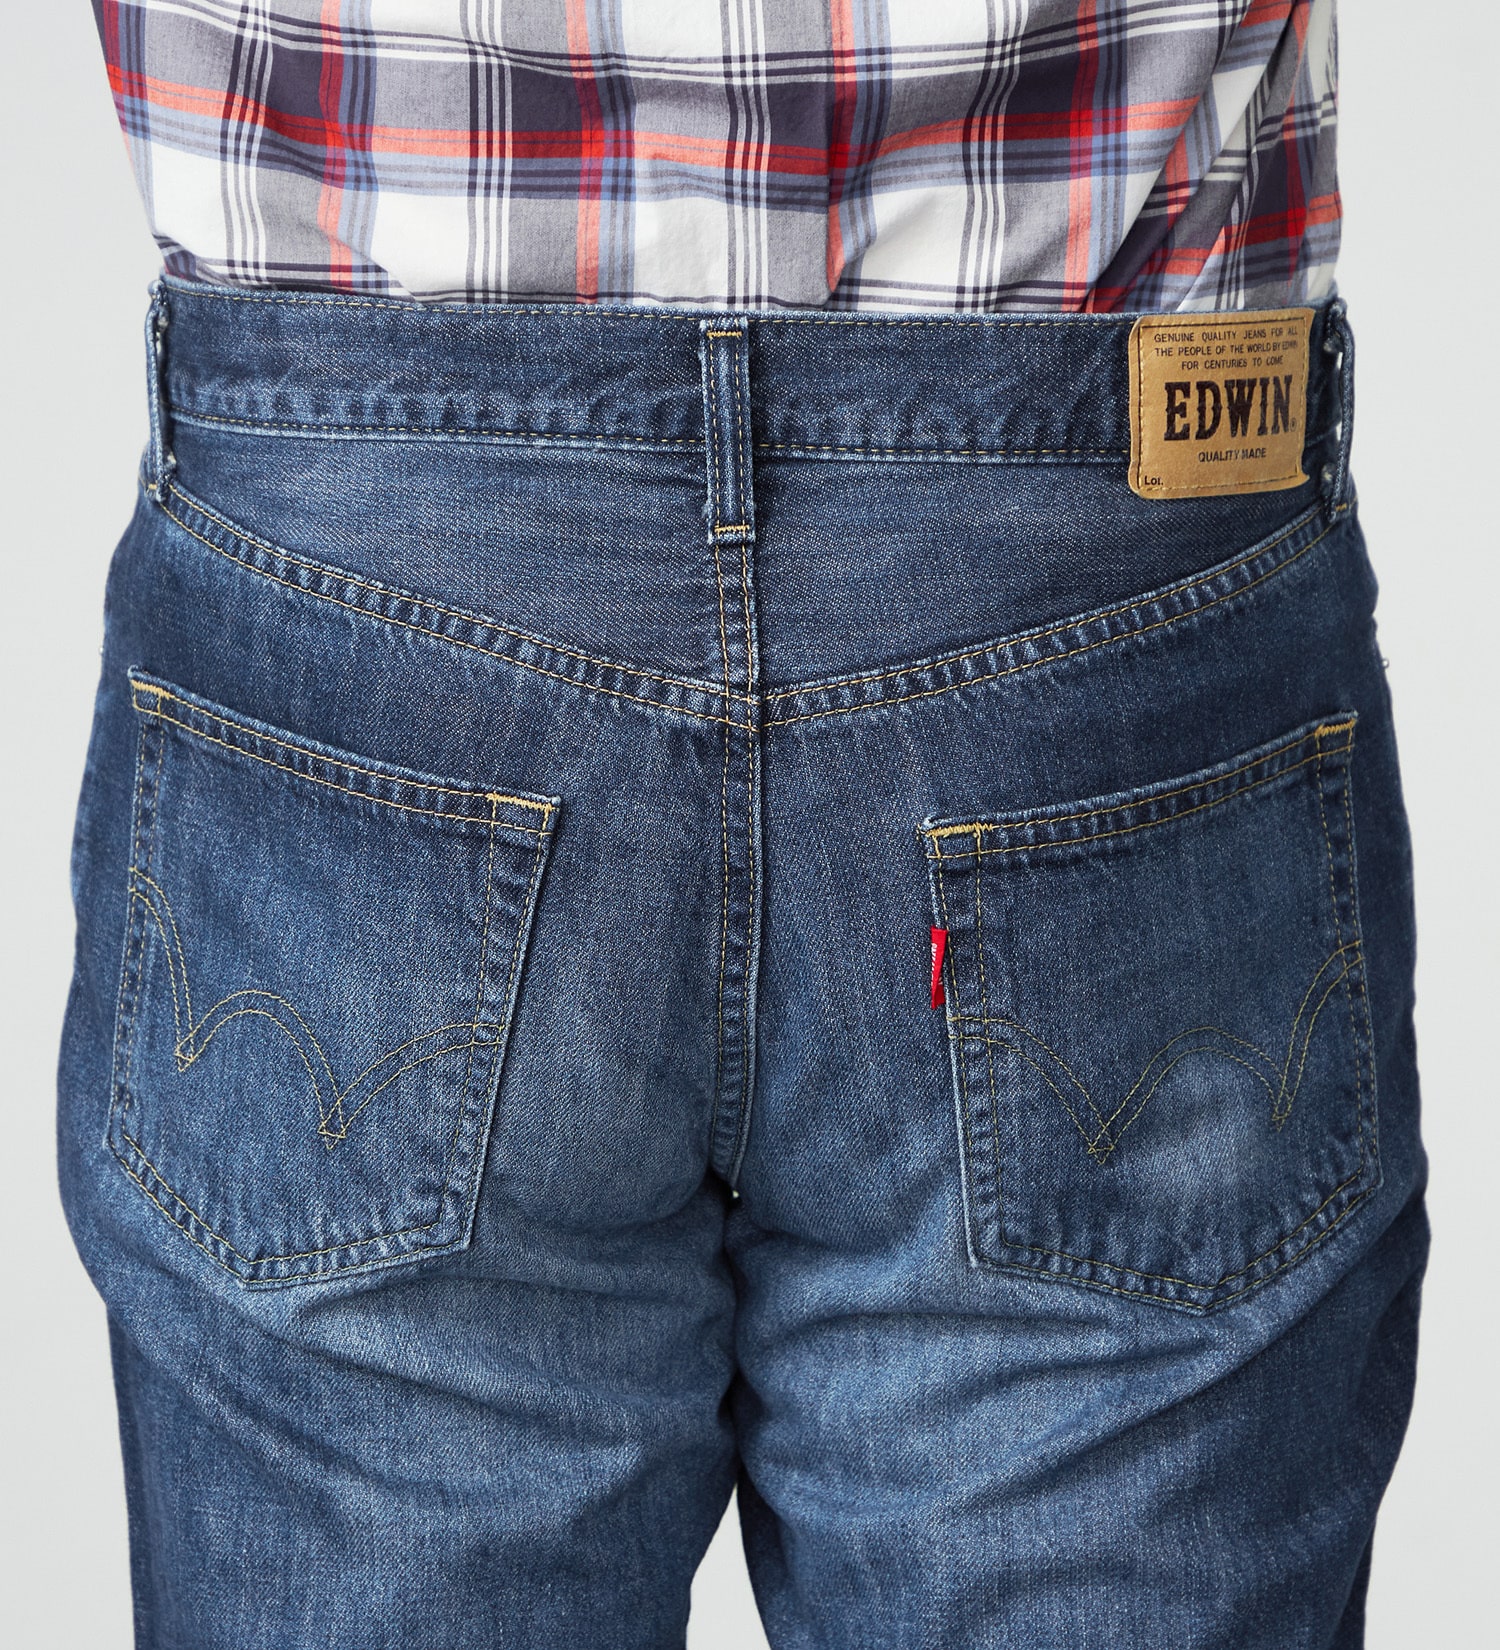 EDWIN(エドウイン)の【大きいサイズ】EDWIN BASIC クロップドデニムパンツ|パンツ/ショート丈/メンズ|濃色ブルー